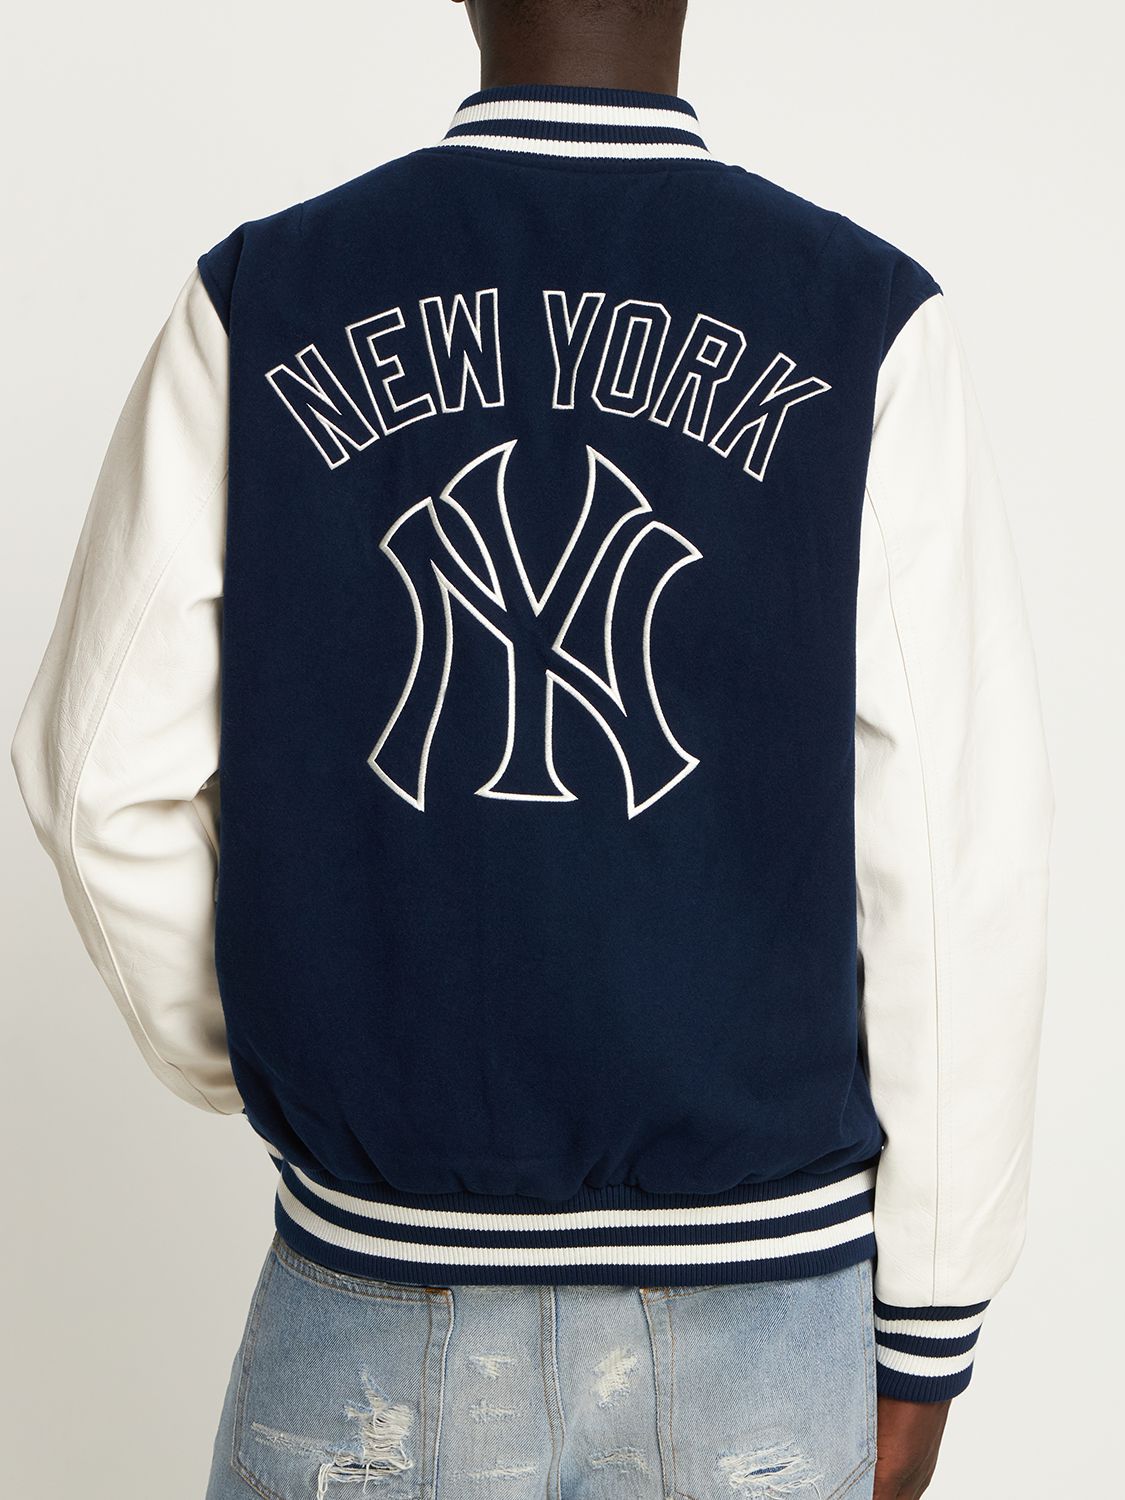 Bomber New Era New York Yankees Heritage Varsity Jacket